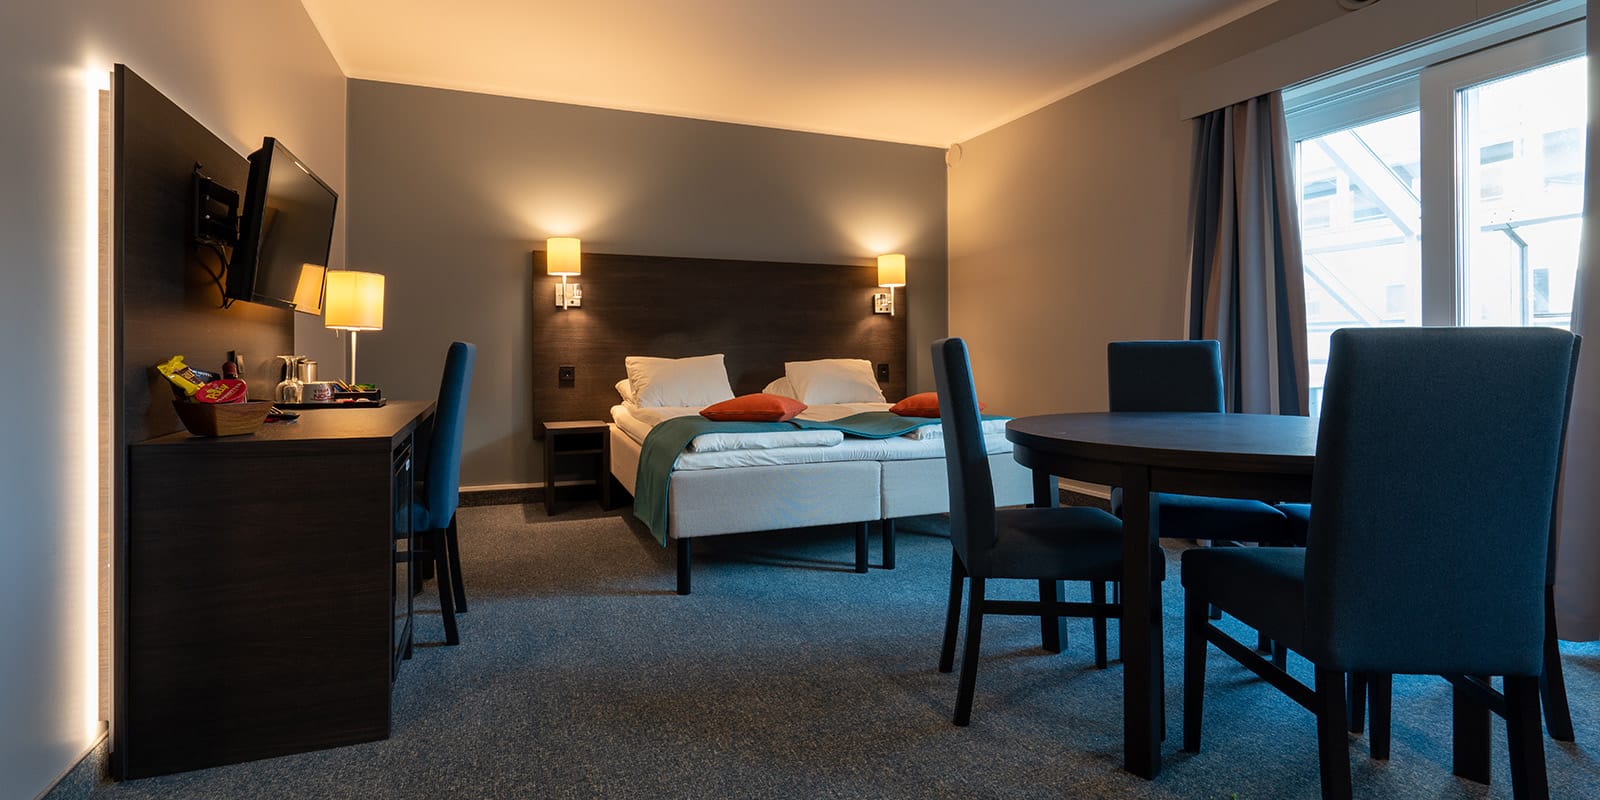 Två sängar i standardfamiljerum på Hotel Måløy